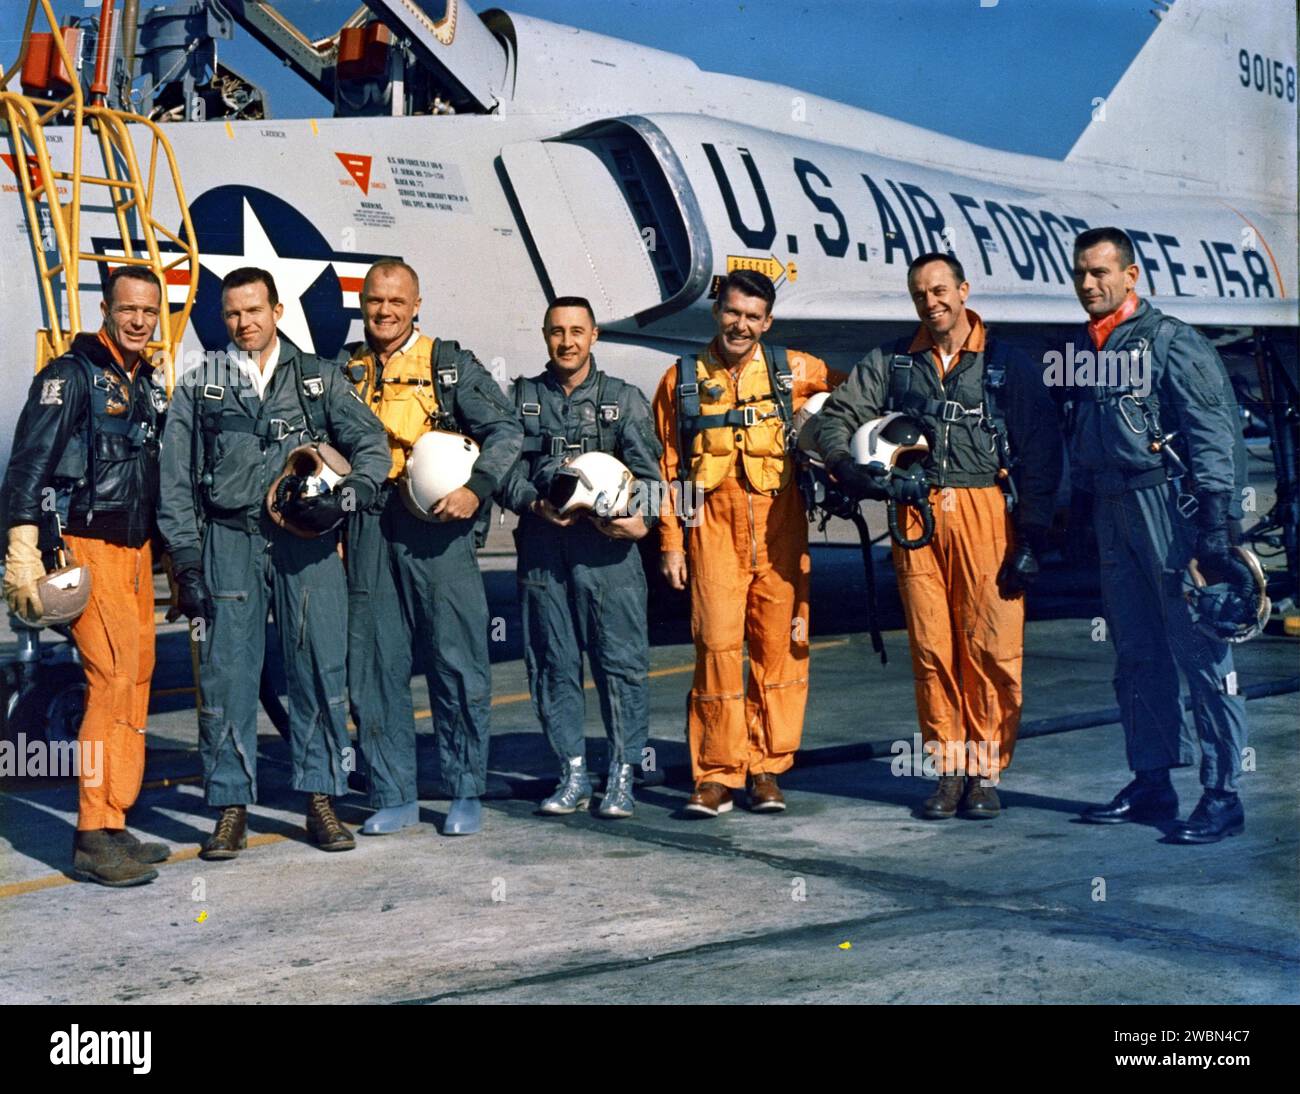 CAPE CANAVERAL, FLA. -- die ursprünglichen Seven Mercury Astronauten posieren neben einem Air Force F-102 Jet. Von links nach rechts stehen M. Scott Carpenter, L. Gordon Cooper, John H. Glenn Jr., Virgil I. „Gus“ Grissom, Walter M. Schirra Jr., Alan B. Shepherd Jr. und Donald K. „Deke“ Slayton. Stockfoto